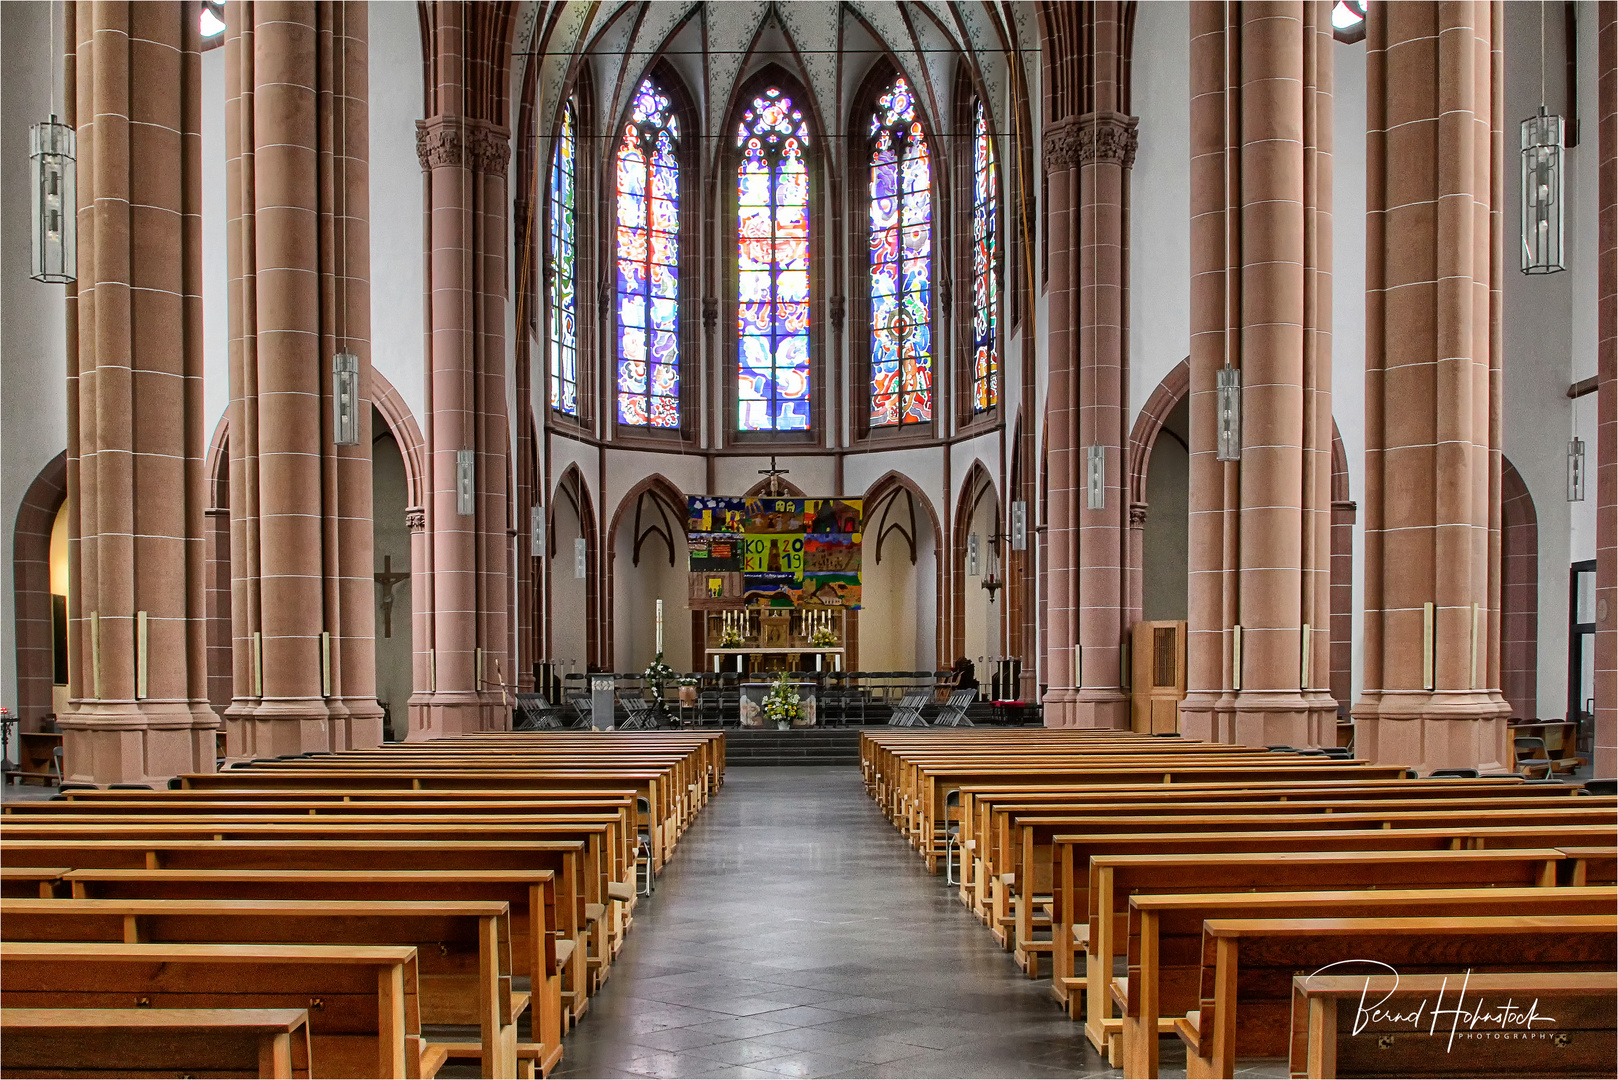 St. Agnes zu Köln